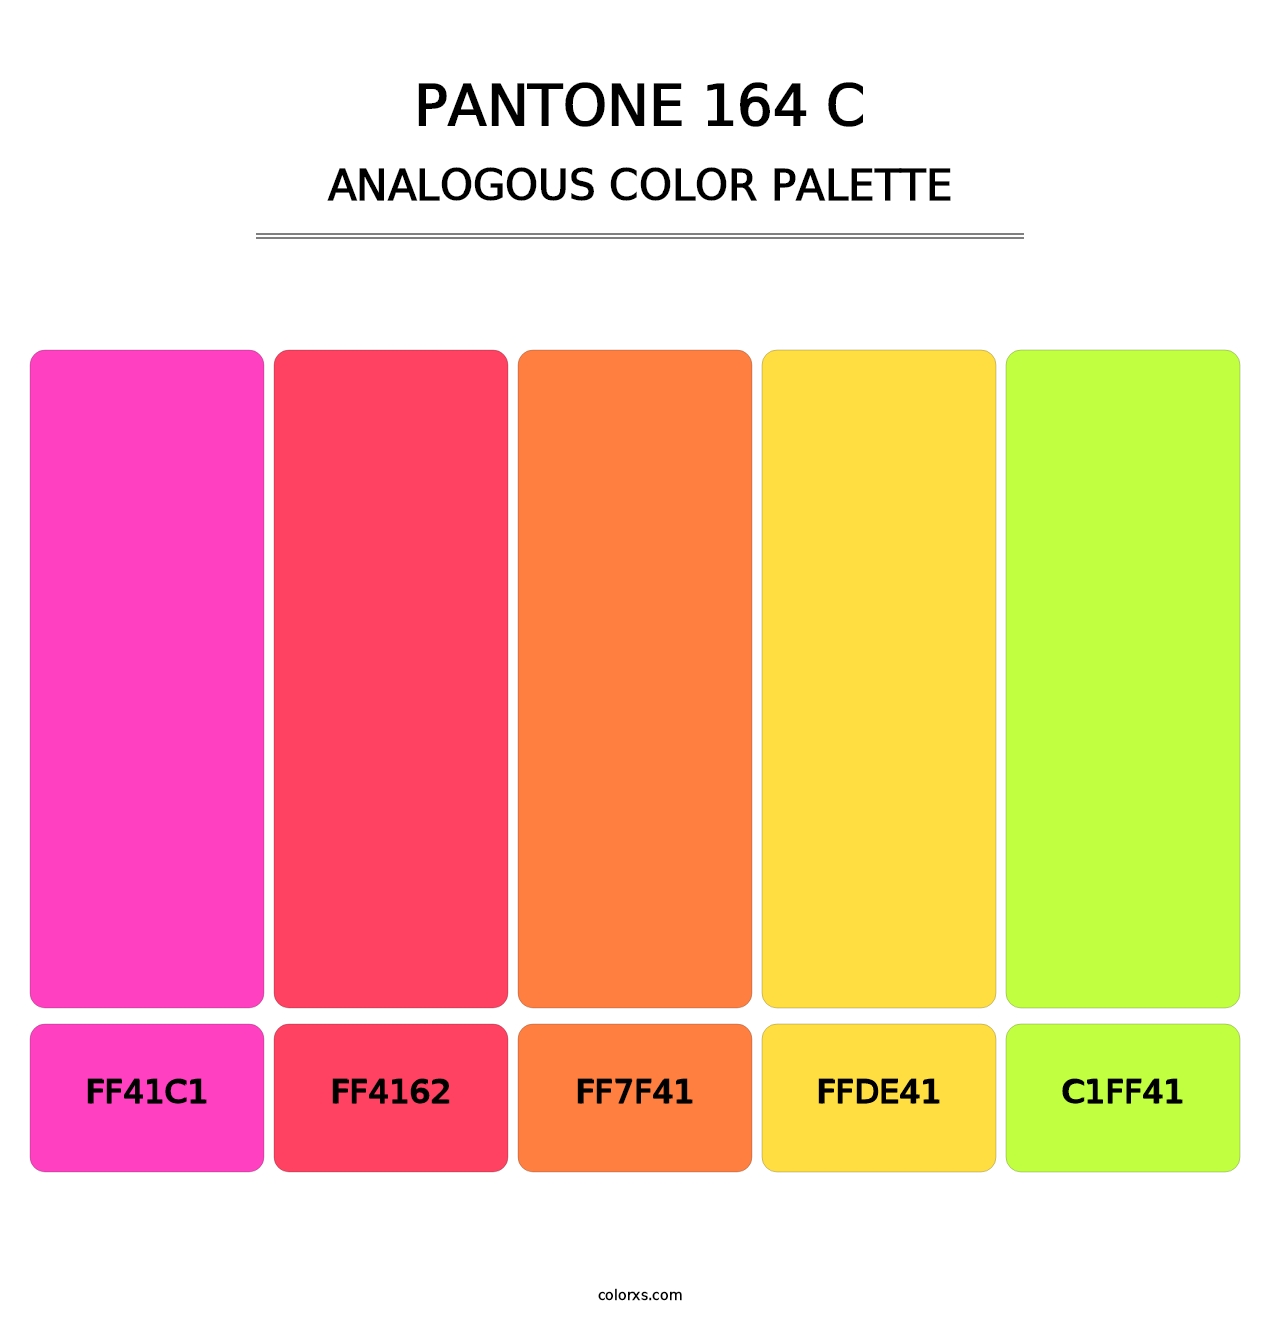 PANTONE 164 C - Analogous Color Palette